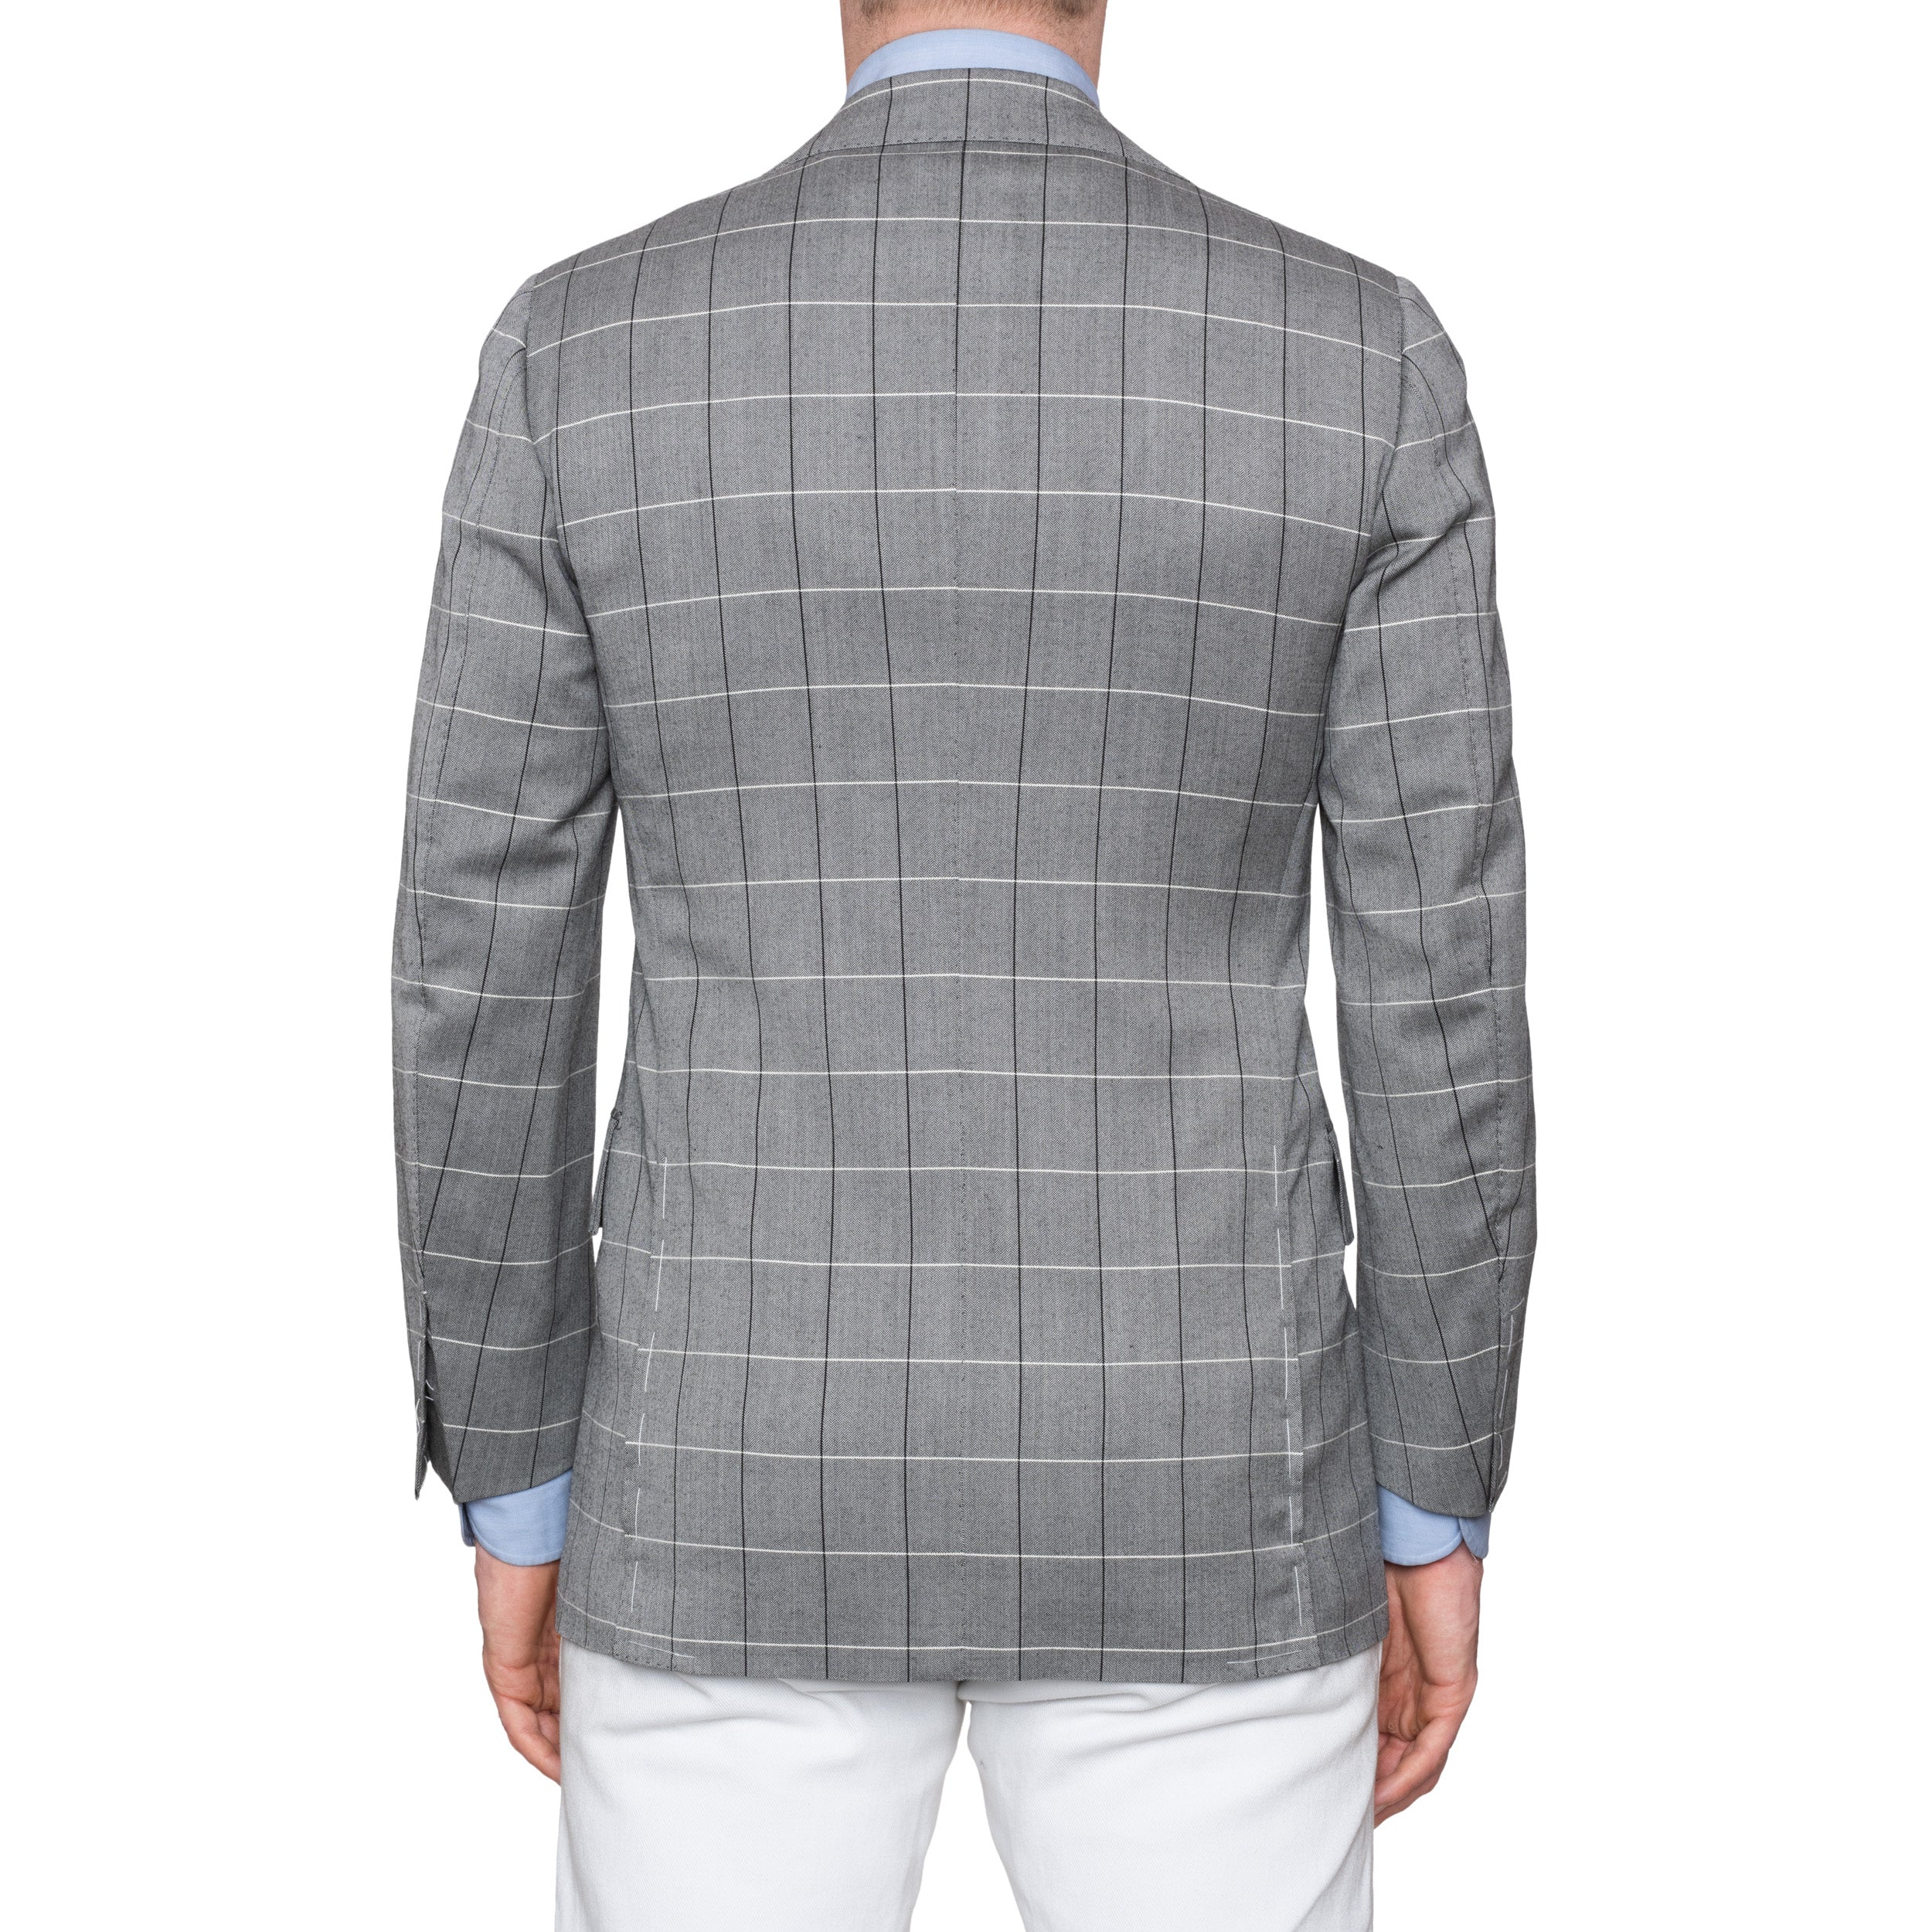 CESARE ATTOLINI Gray Herringbone Plaid Wool Super 120's Blazer Jacket 46 NEW 36 CESARE ATTOLINI